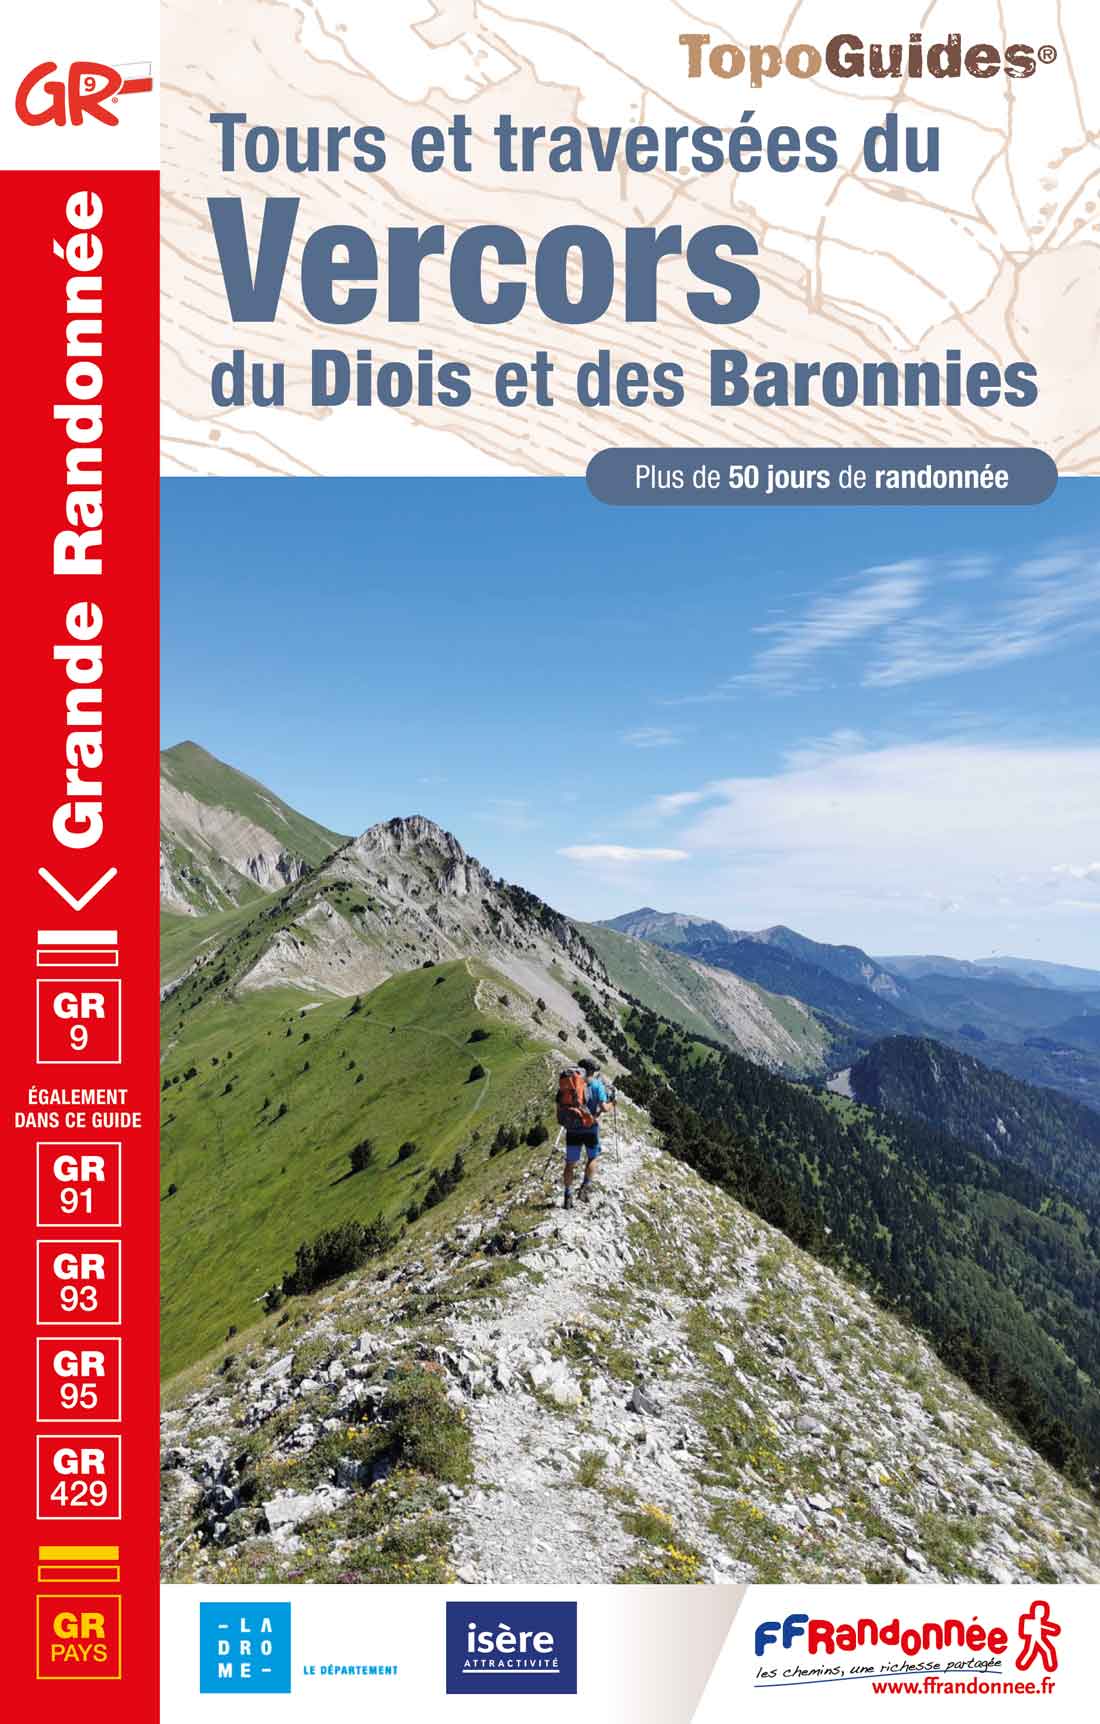 topoguide FFRandonnée GR - Tours et traversées du Vercors, du Diois et des Baronnies